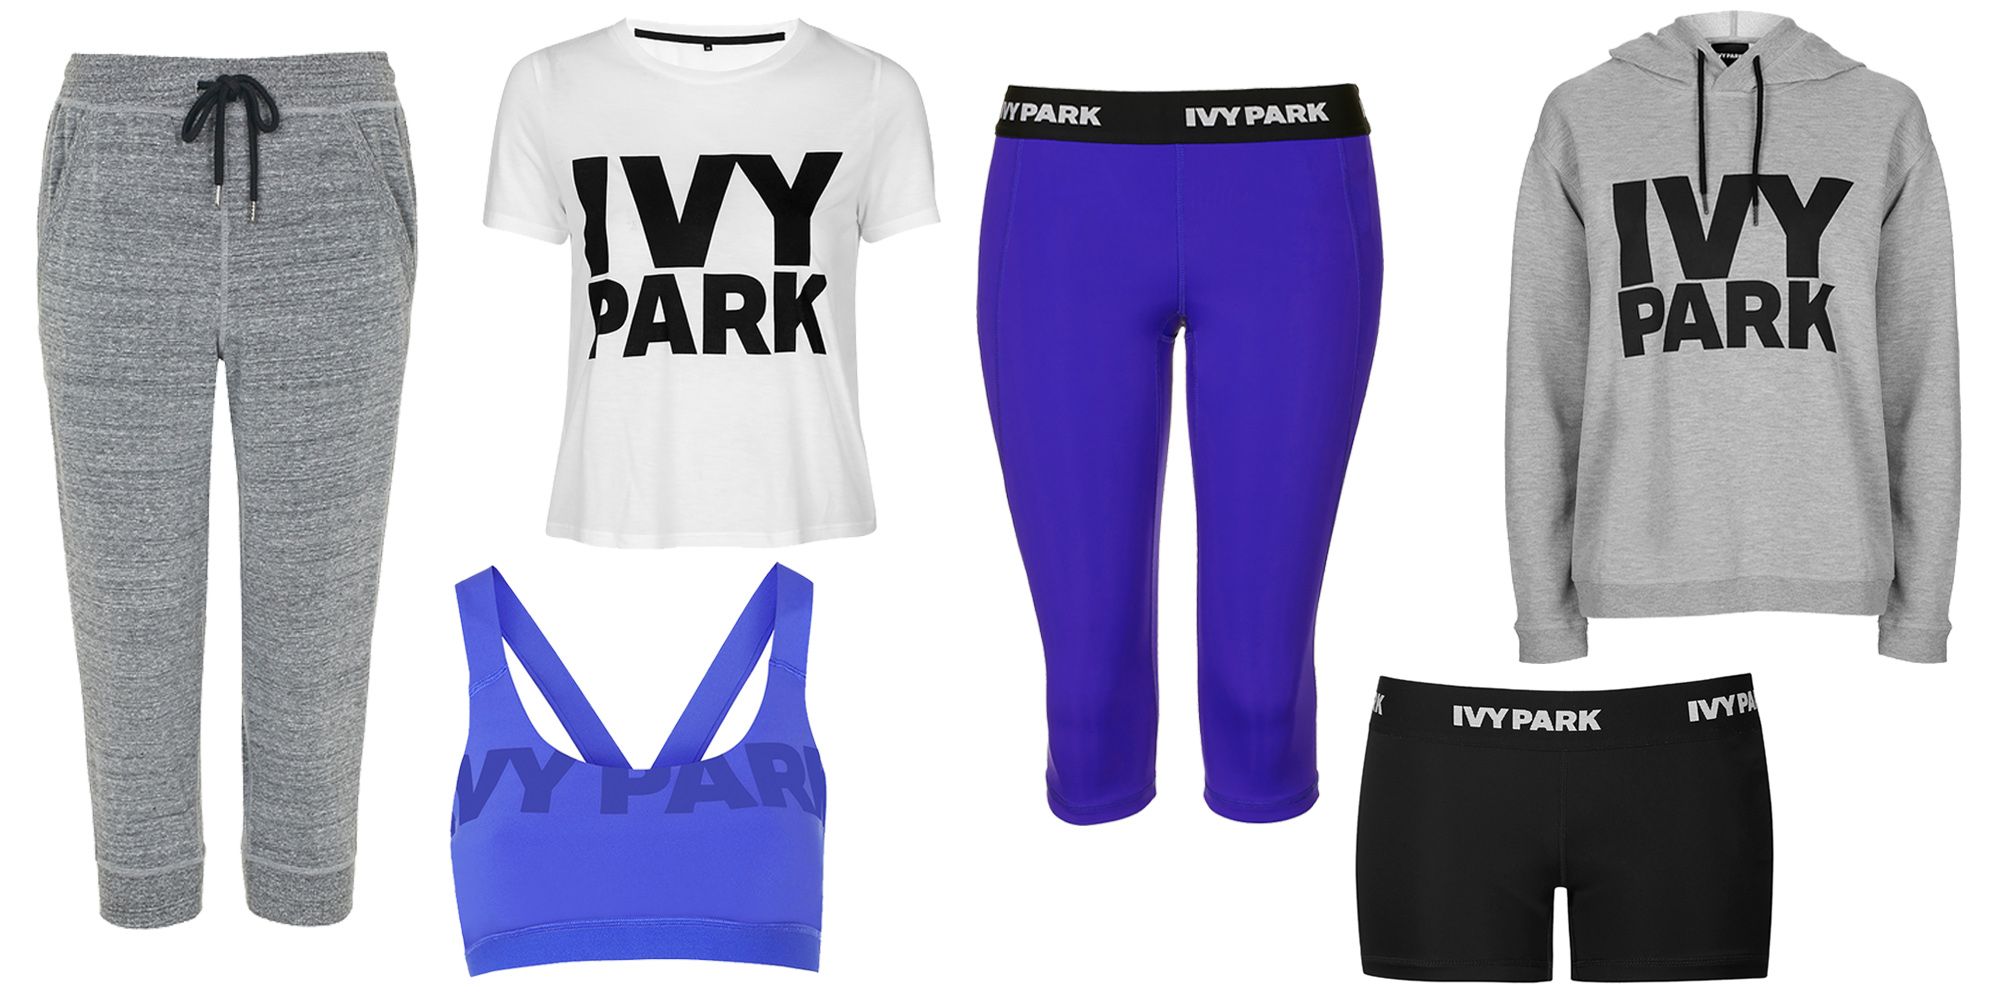 ivy park clothing uk